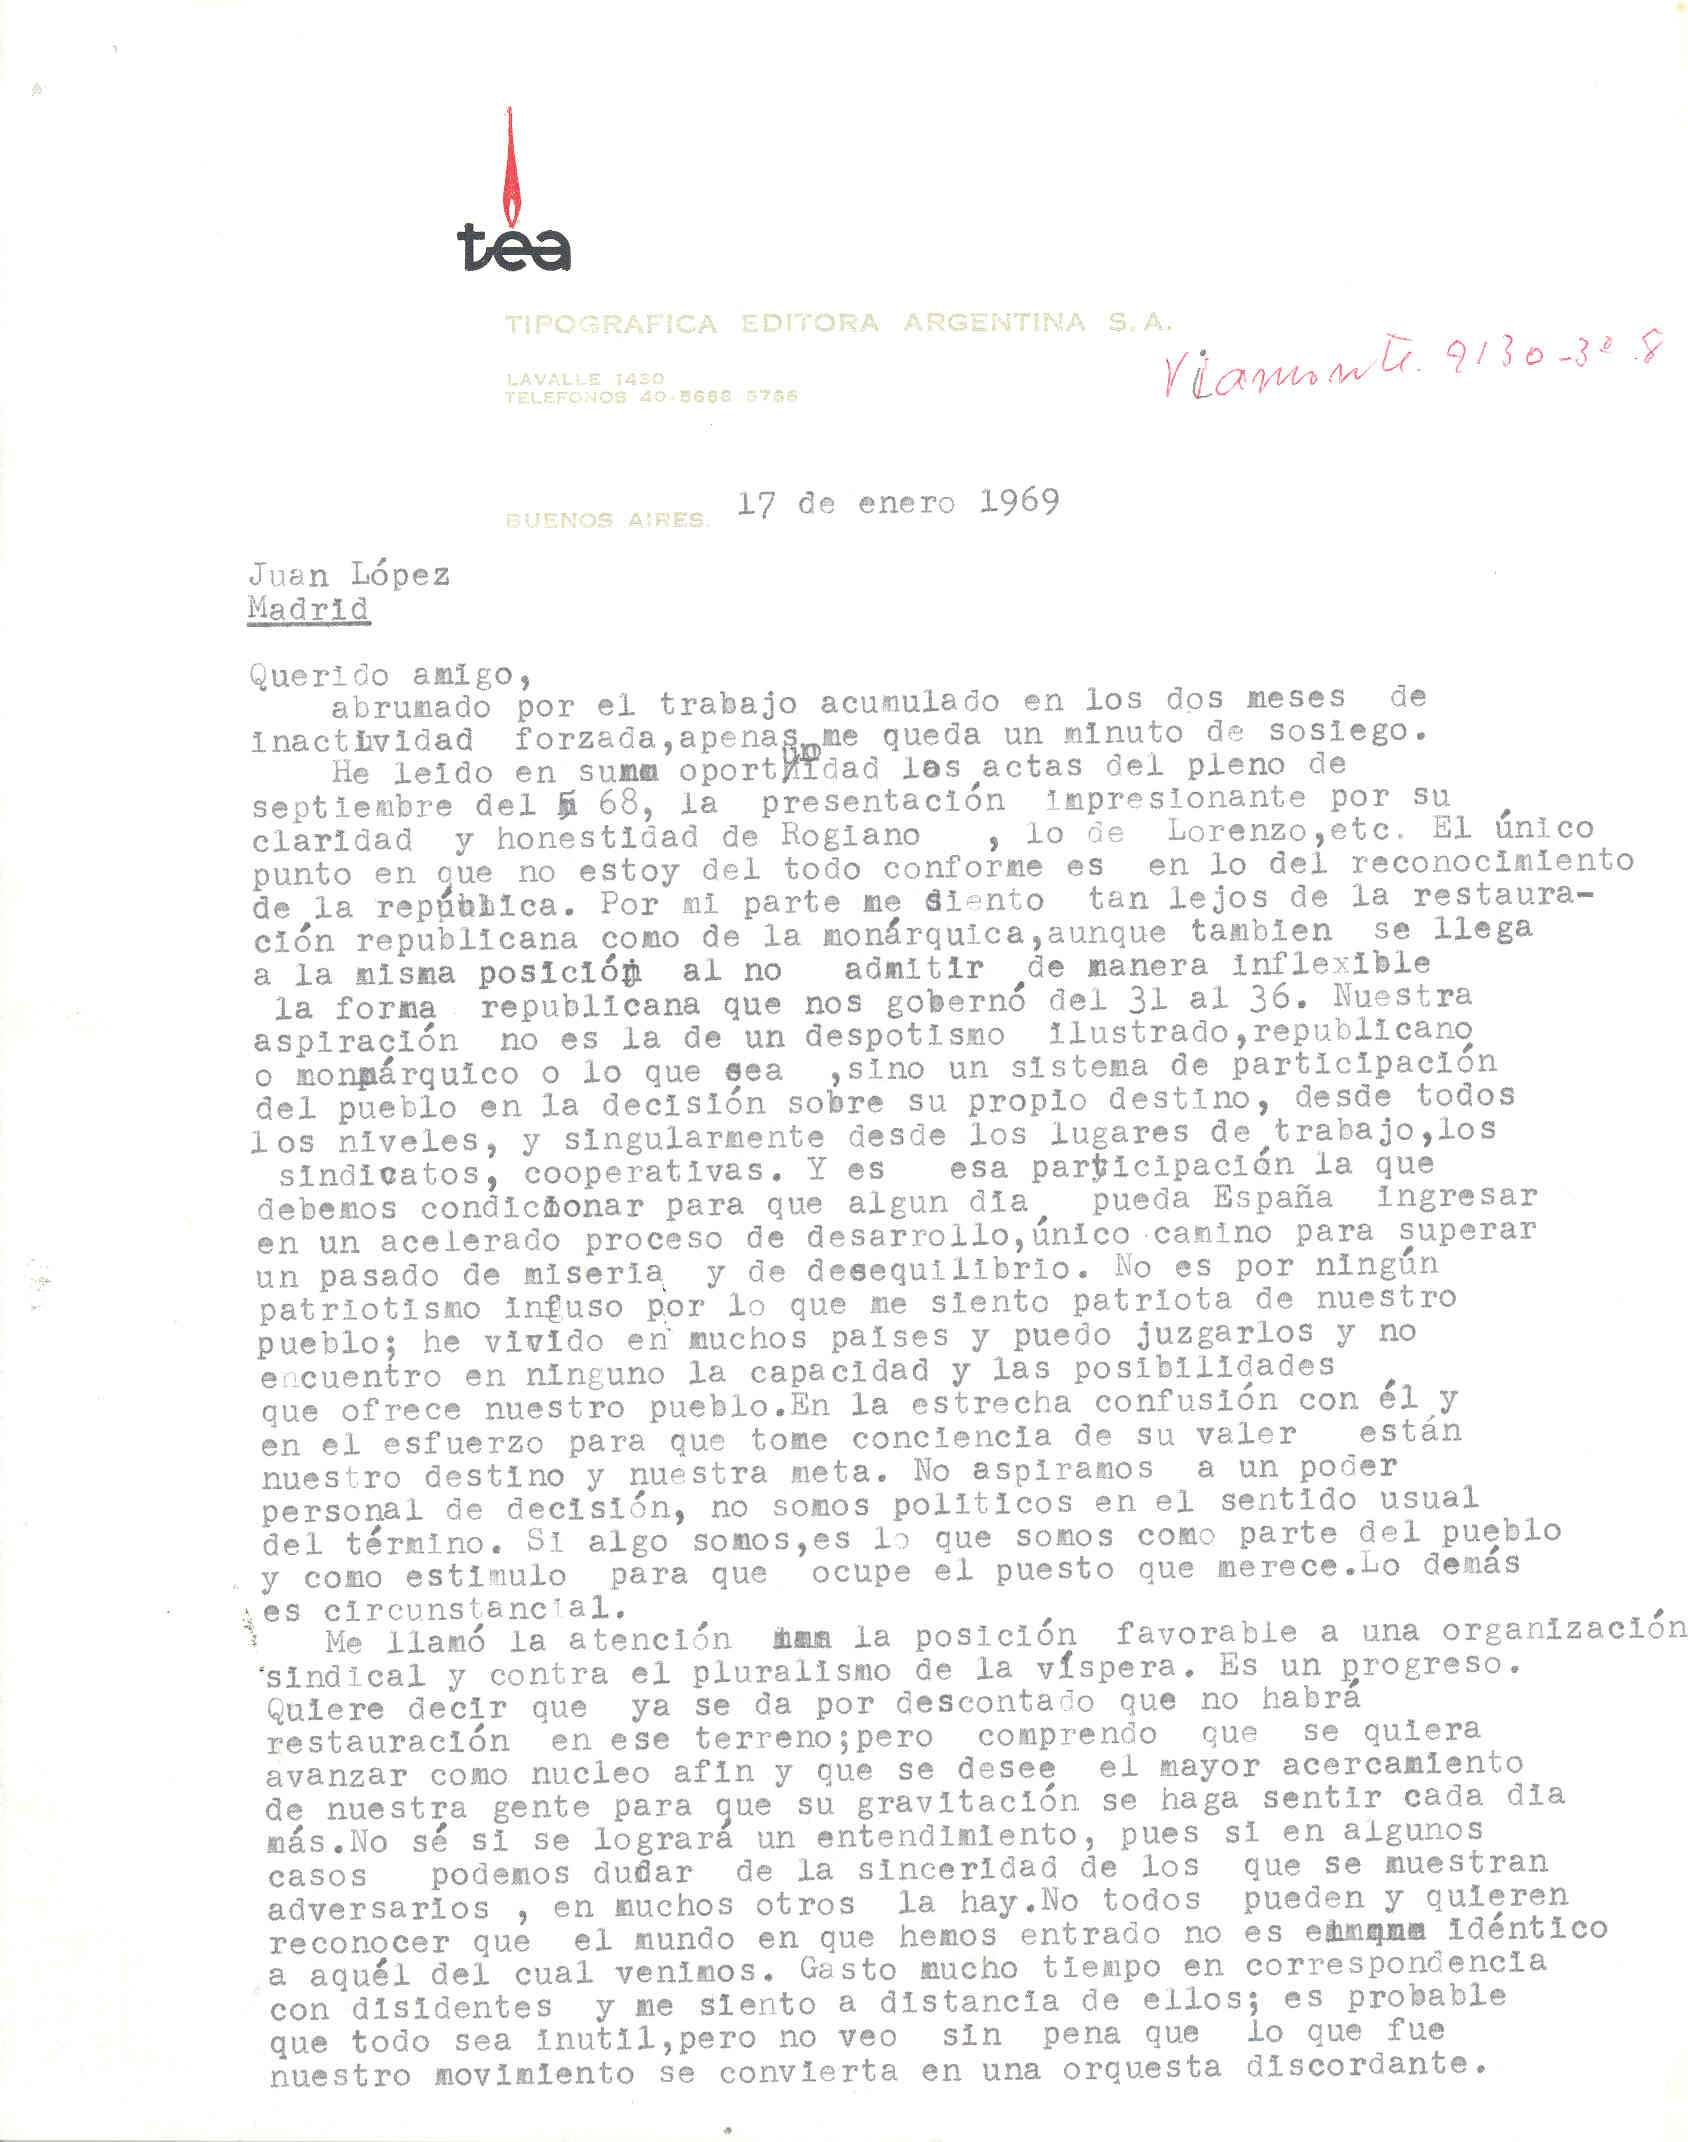 Carta de Diego Abad de Santillán sobre las actas del Pleno Regional de Septiembre de 1968 y el confrontamiento de personas para intentar conseguir algún acuerdo y alguna unidad.